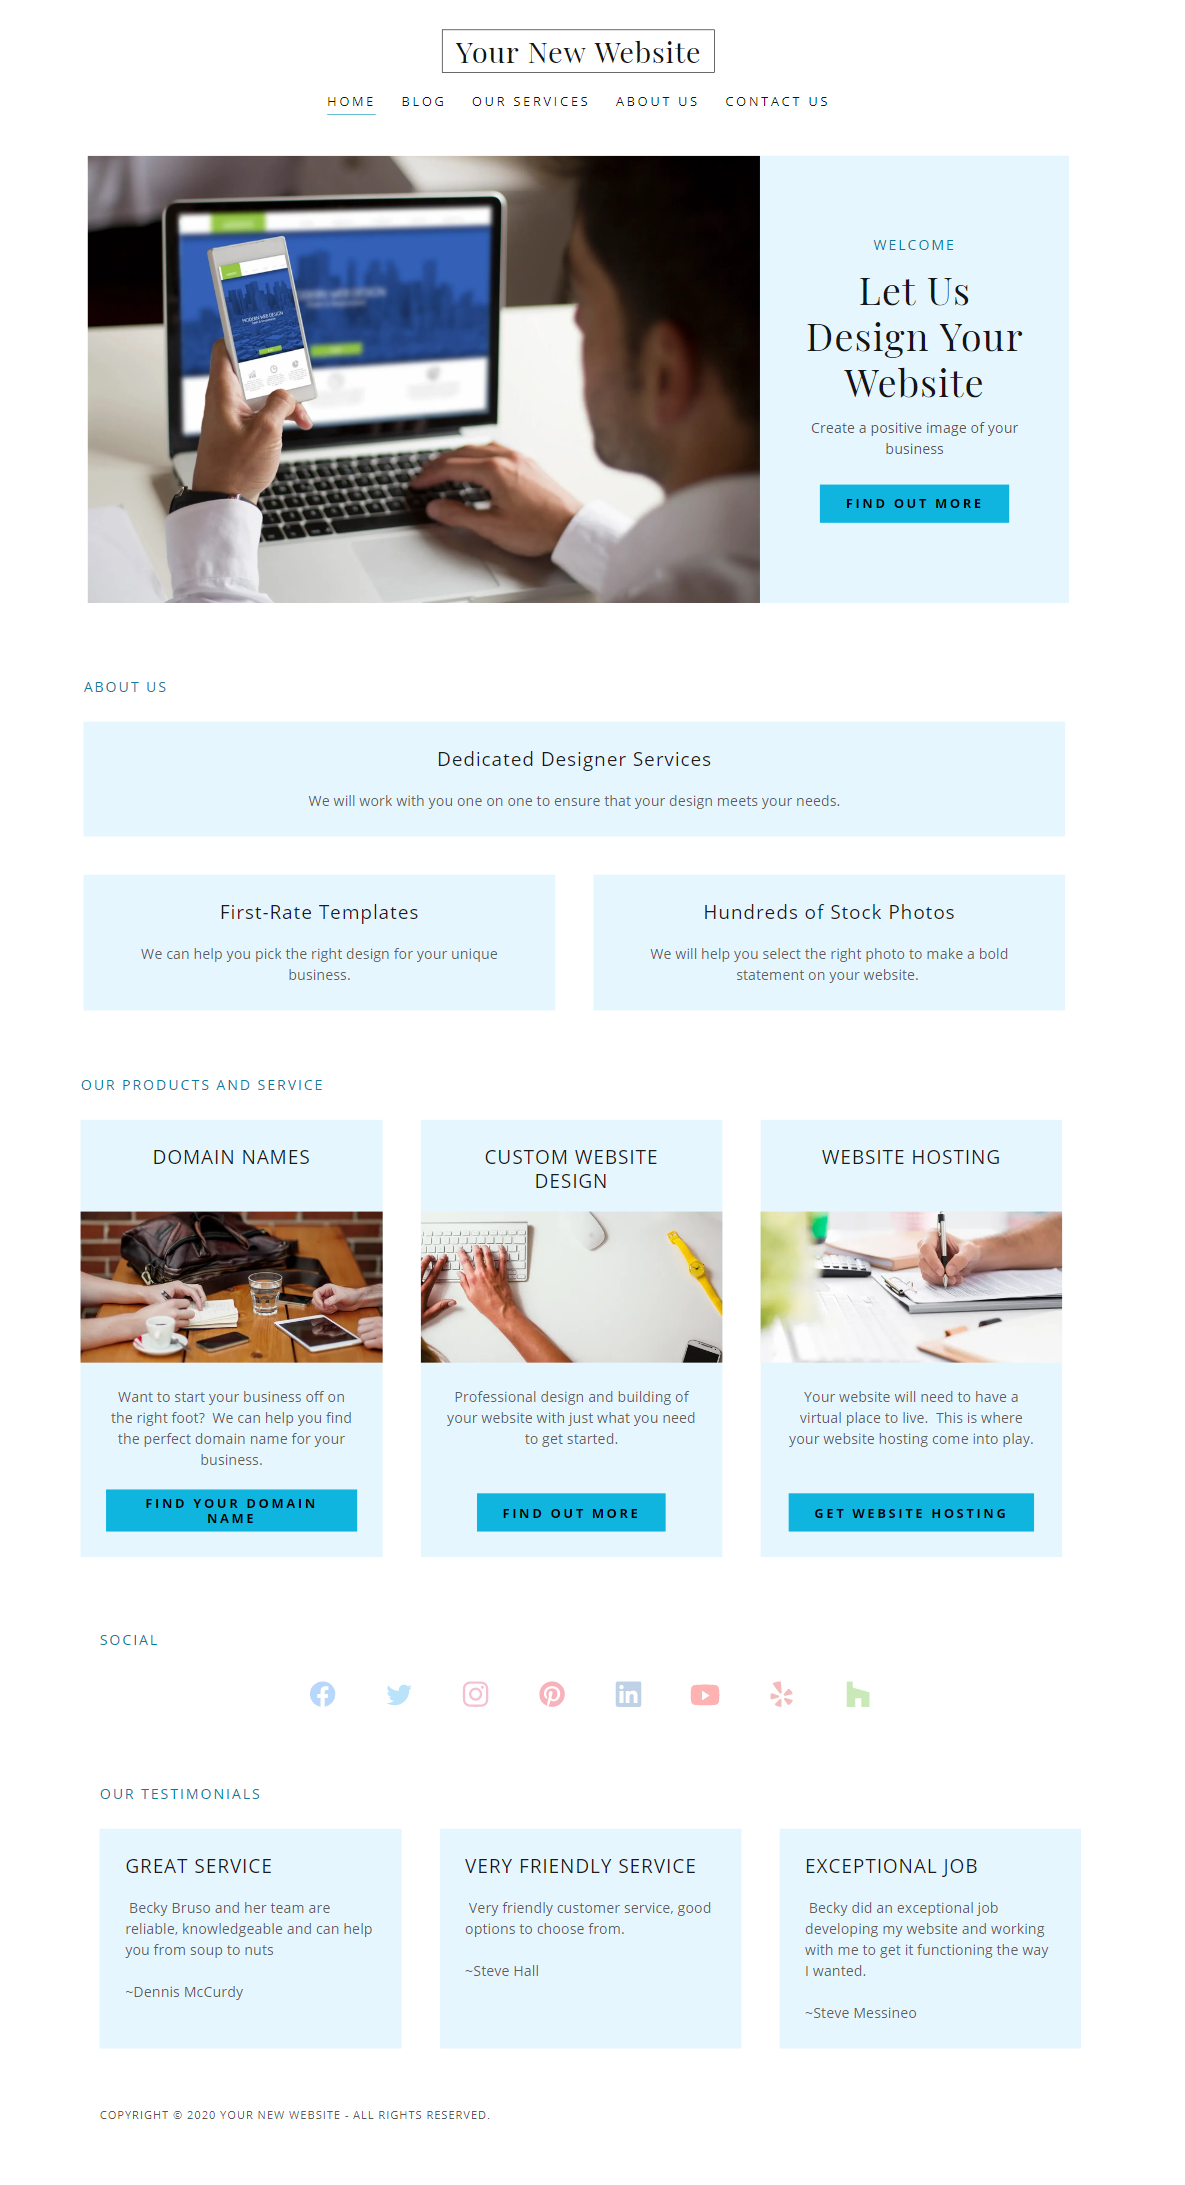 Sample Website Home Page Design